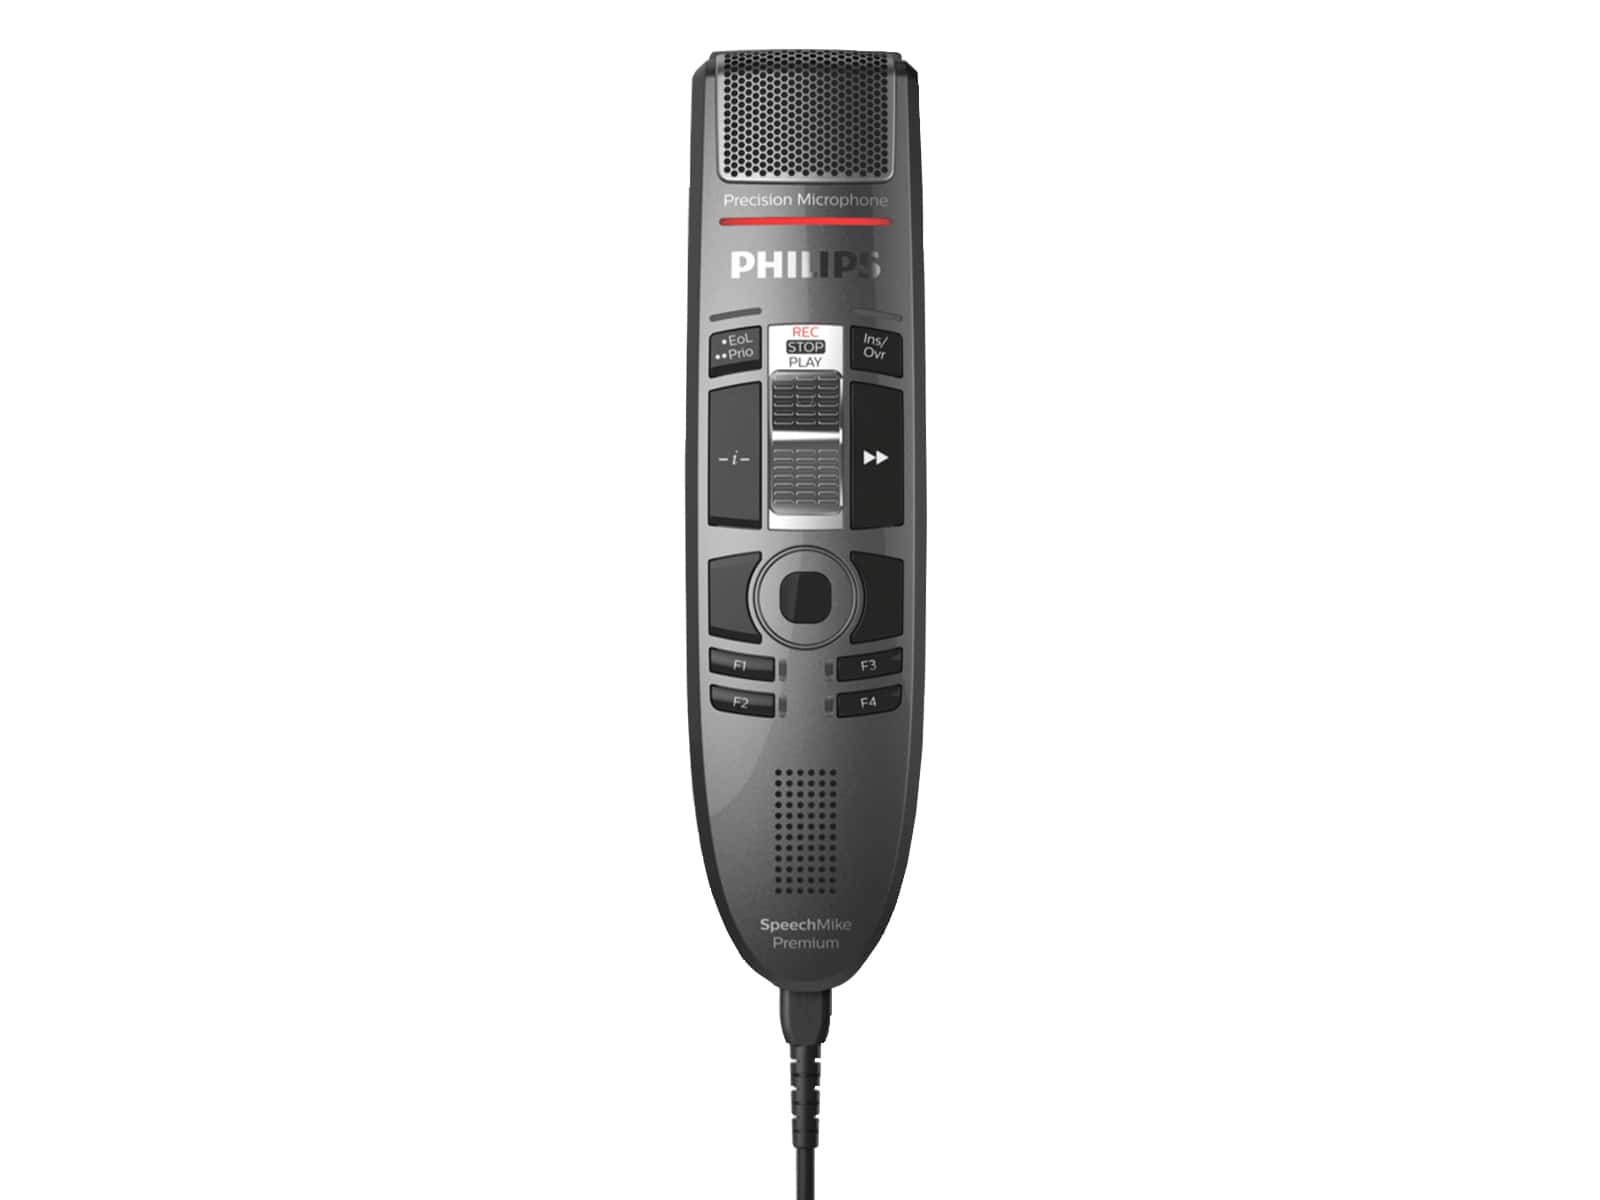 Philips SpeechMike Premium Micrófono de dictado con interruptor deslizante táctil (SMP3710) Monitors.com